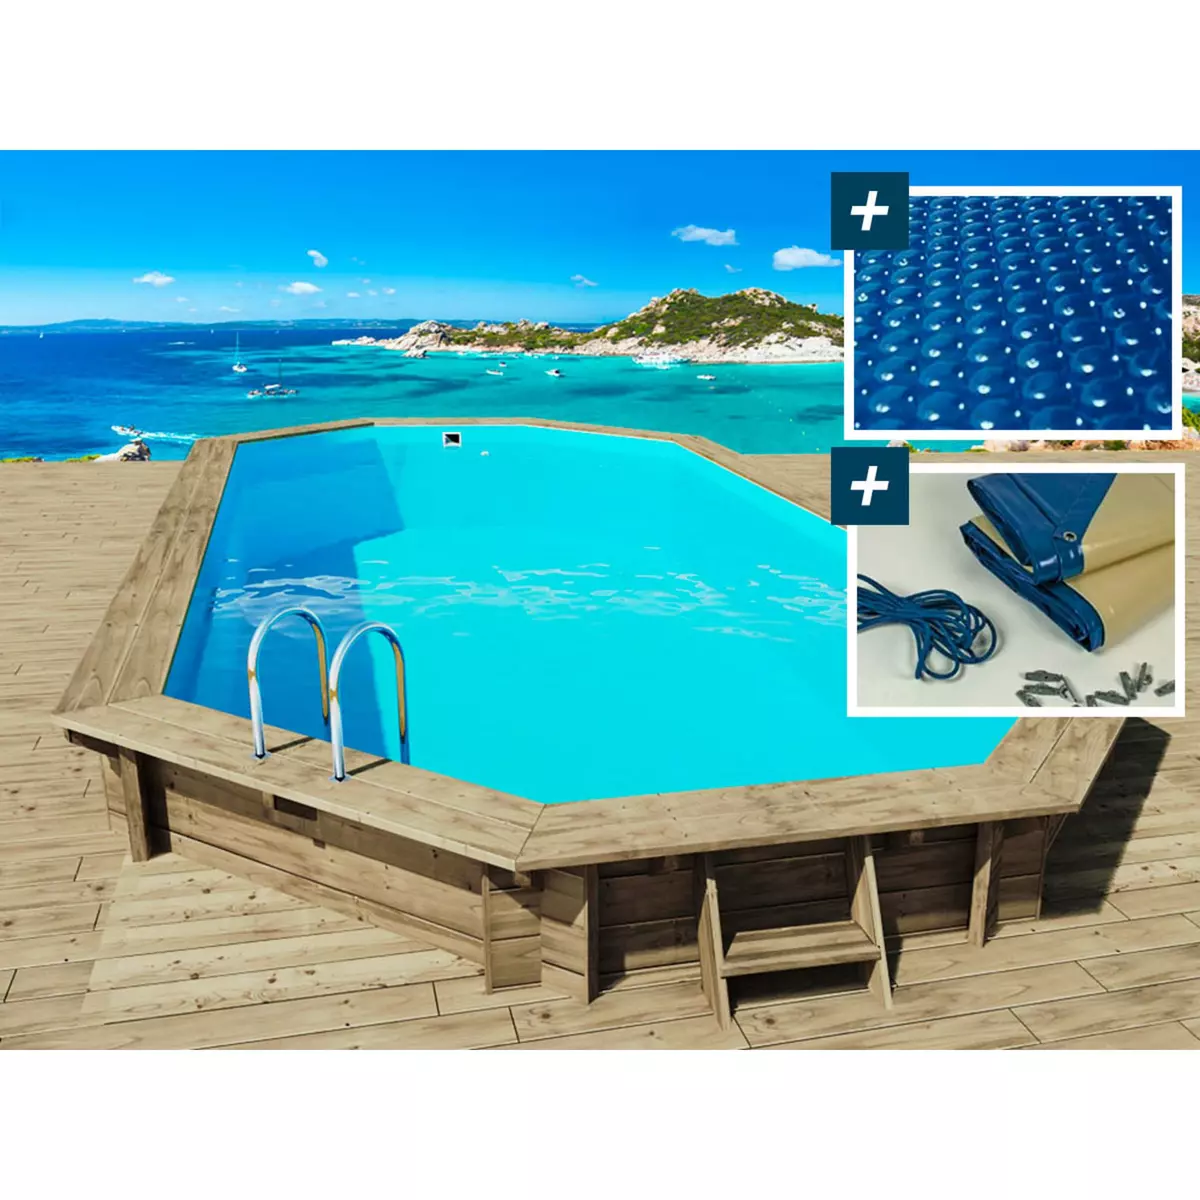 Habitat et Jardin Piscine bois   Ibiza   - 8.57 x 4.57 x 1.31 m - Bâche à bulles  180 µ - Bâche hiver  280 g/m²